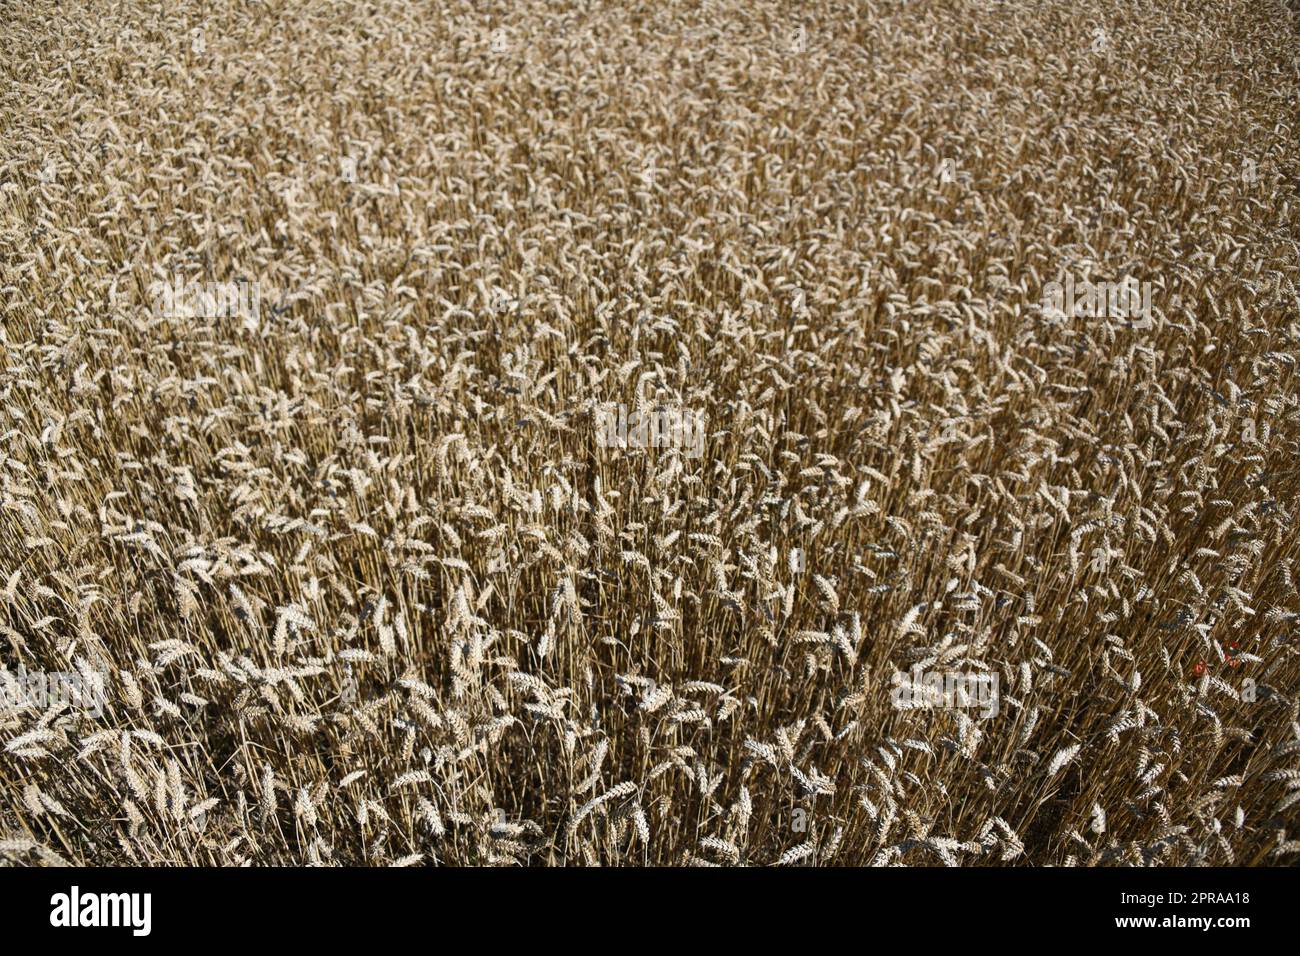 Weizengetreide tragen wesentlich zur Ernährung der Weltbevölkerung bei. Weizen ist ein Grundnahrungsmittel. Die weltweit größten Anbaugebiete befinden sich in der Ukraine und in Europa. Stockfoto